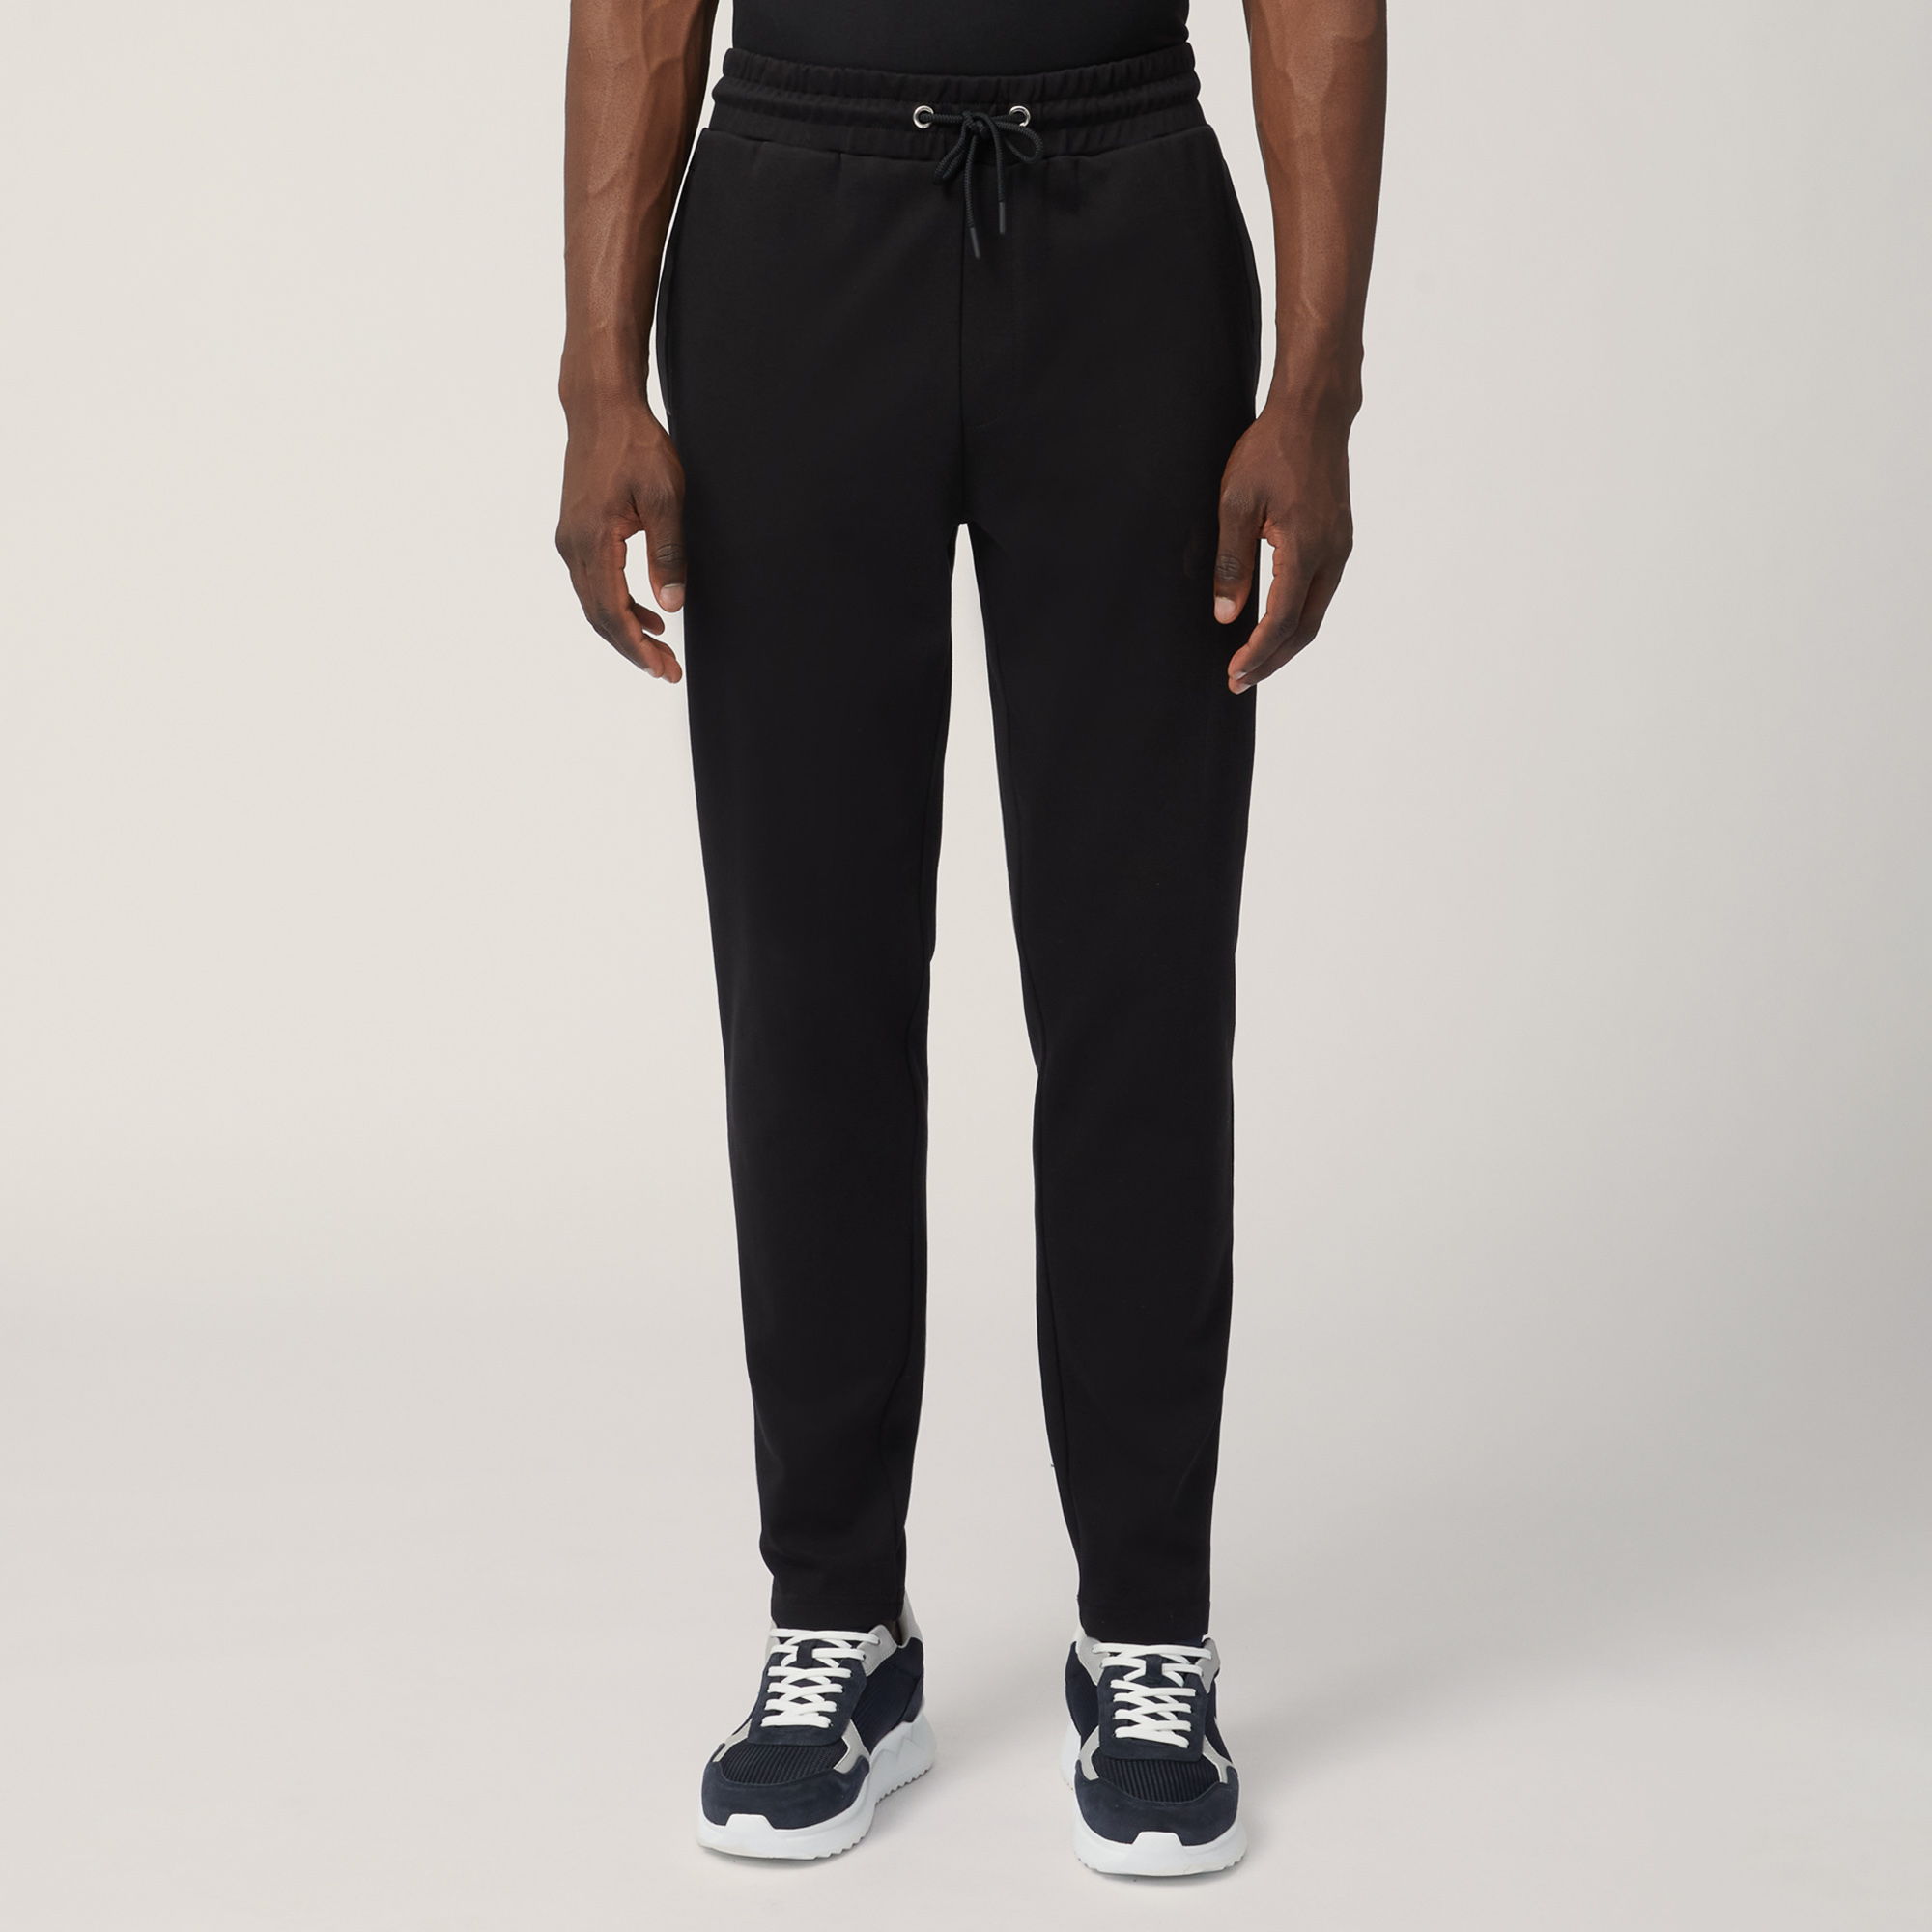 Cotton Pants with Back Pocket, Black, large image number 0